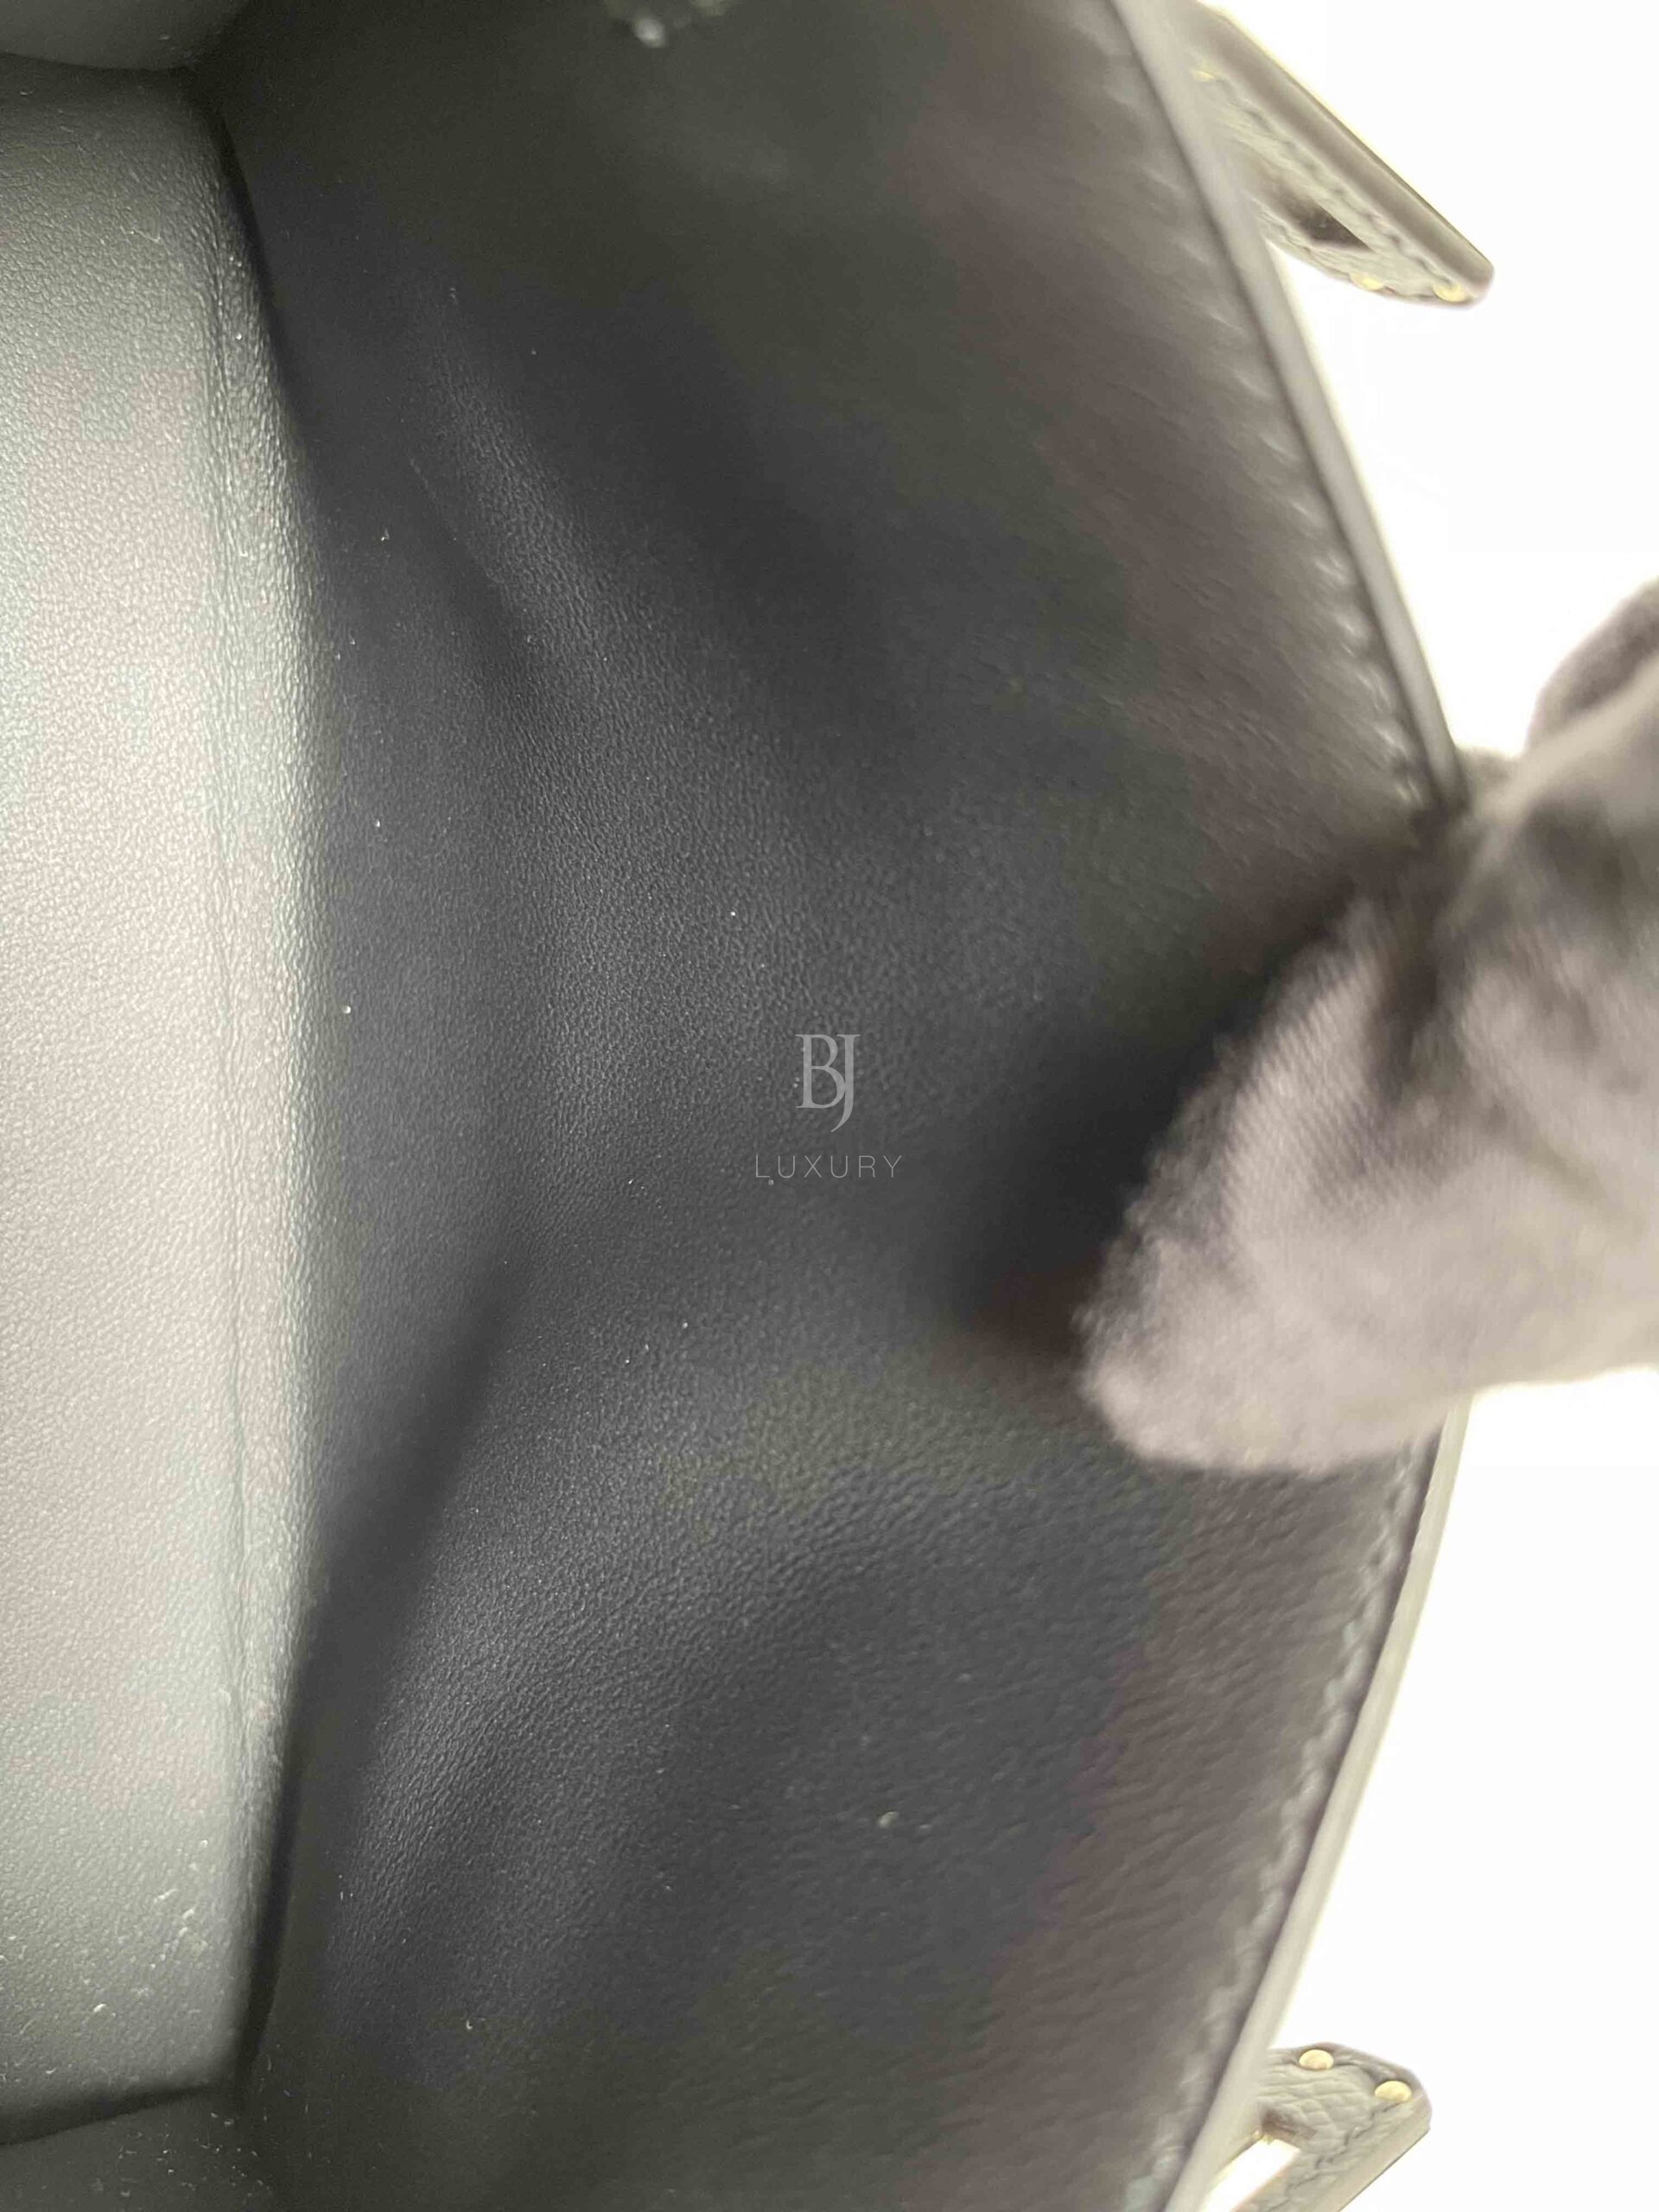 HERMES-KELLYSELLIER-20-BLACK-EPSOM-Photo 13-10-22, 5 29 27 PM.jpg